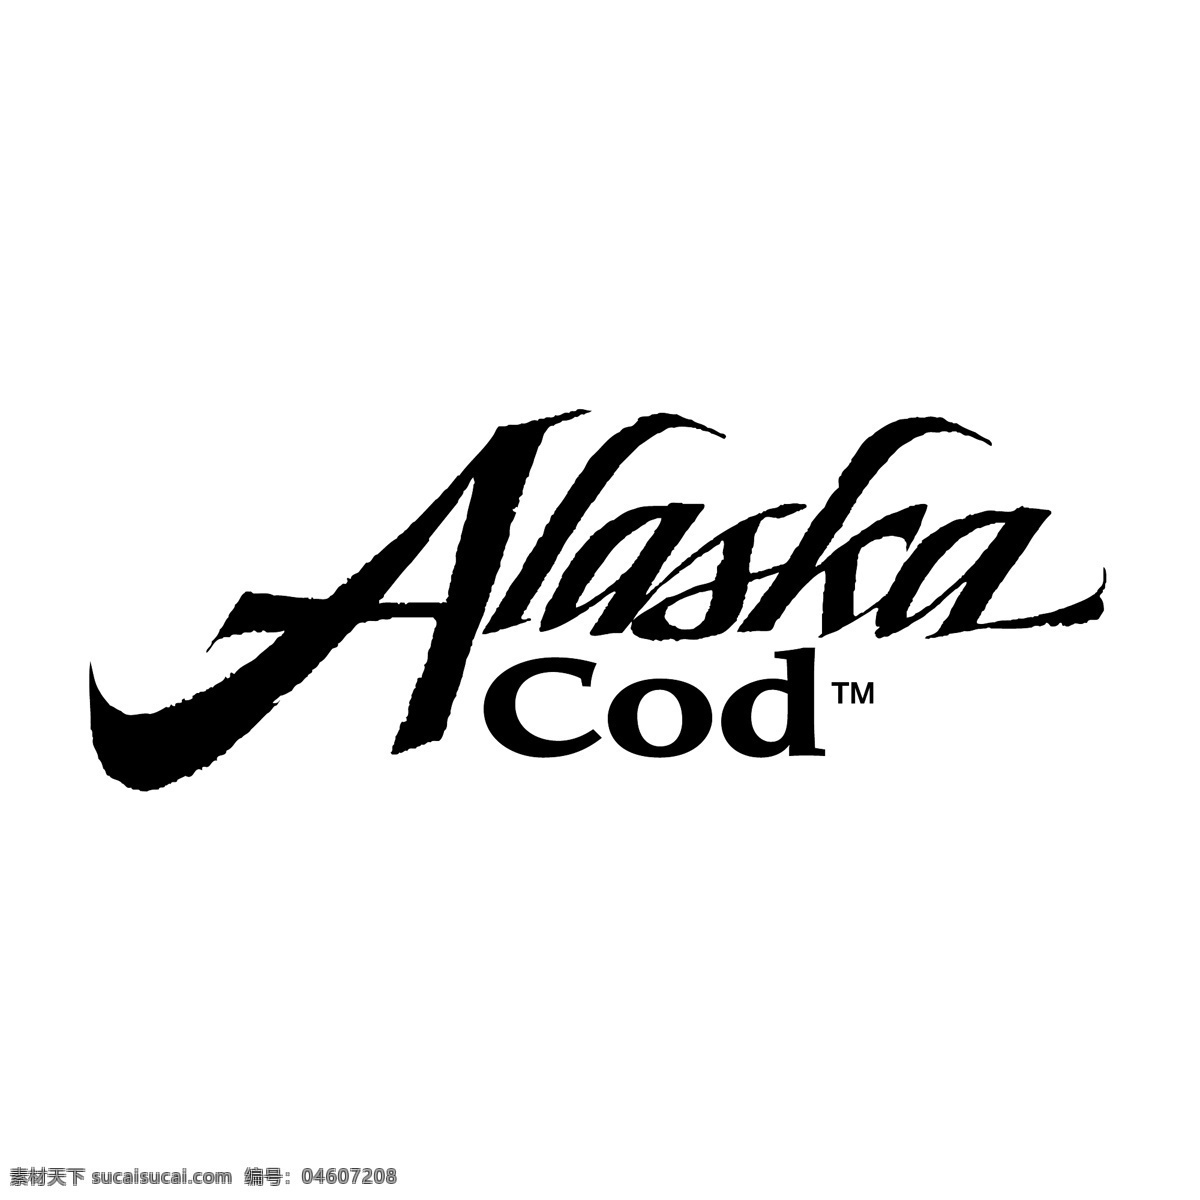 免费矢量 阿拉斯加 阿拉斯加鳕鱼 鳕鱼 自由 矢量 阿拉斯加艺术 阿拉斯加形象 免费矢量鳕鱼 免费 图像 cod 标志 标志阿拉斯加 向量 建筑家居